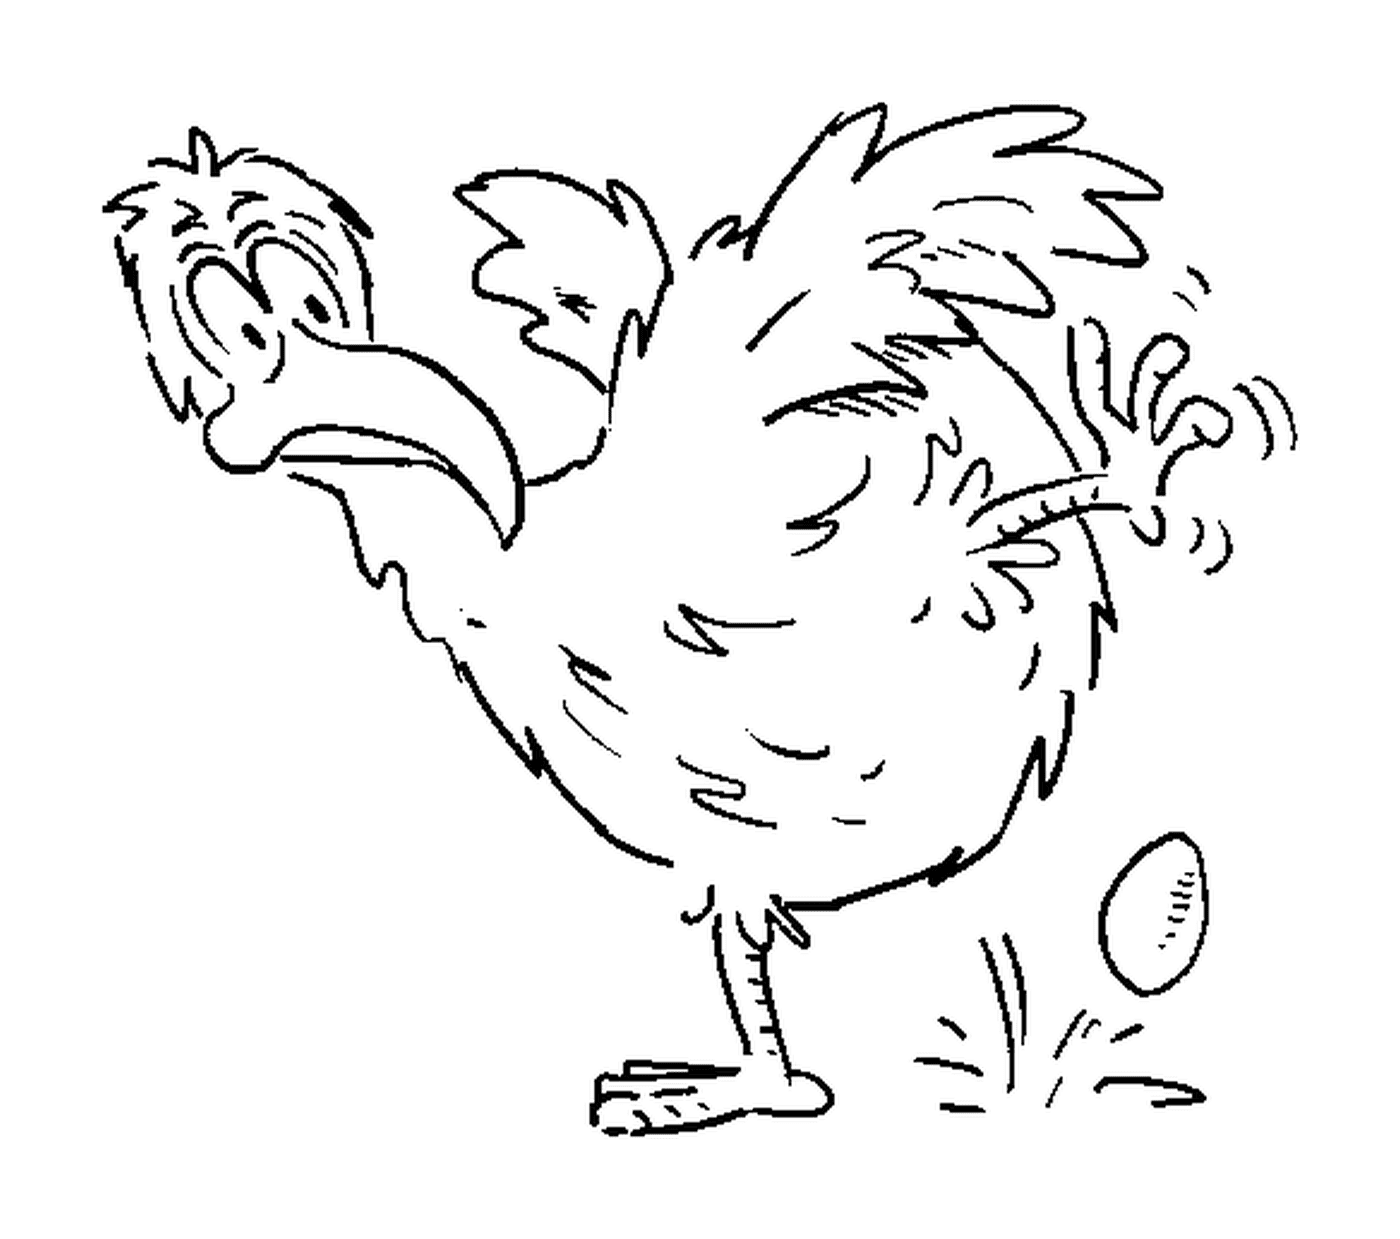  Яйцо, складывающее курицу 